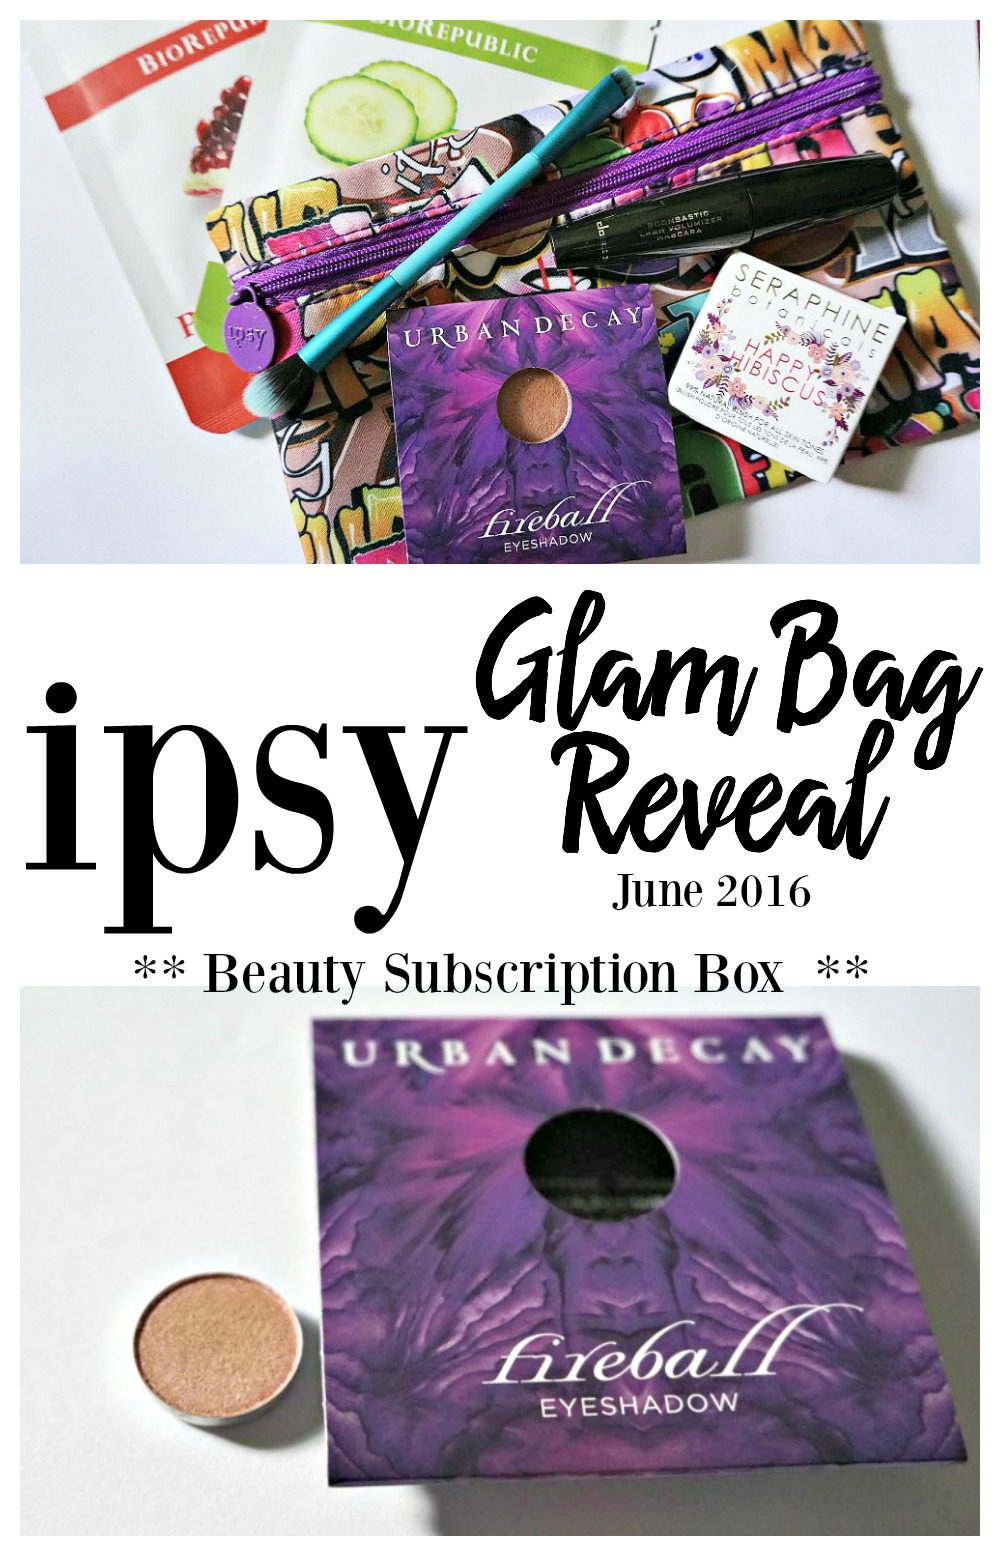 ipsy Glam Bag Reveal June 2016